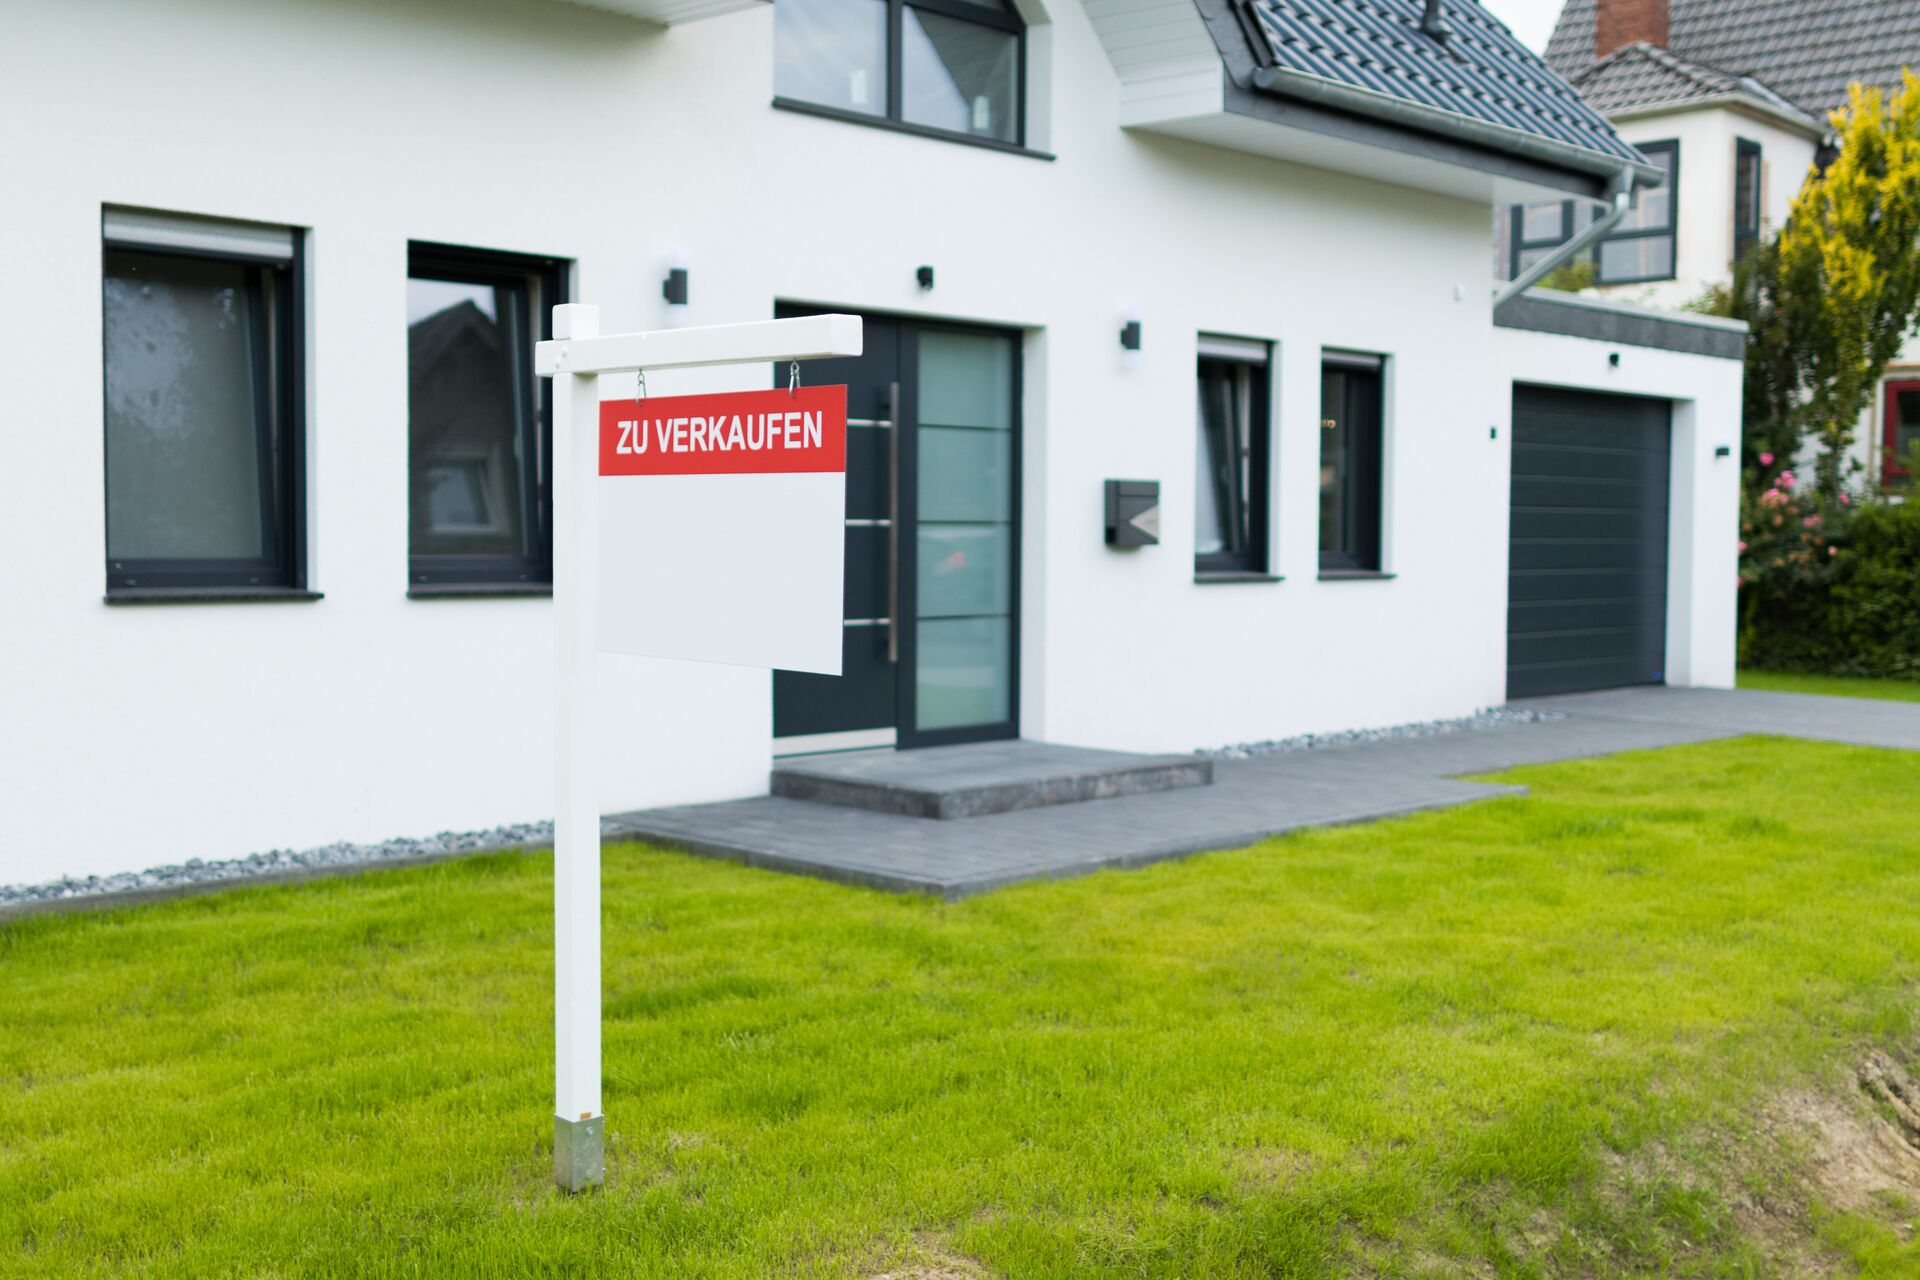 Haus, Bauernhof oder Resthof verkaufen bei Bad Zwischenahn & Wardenburg